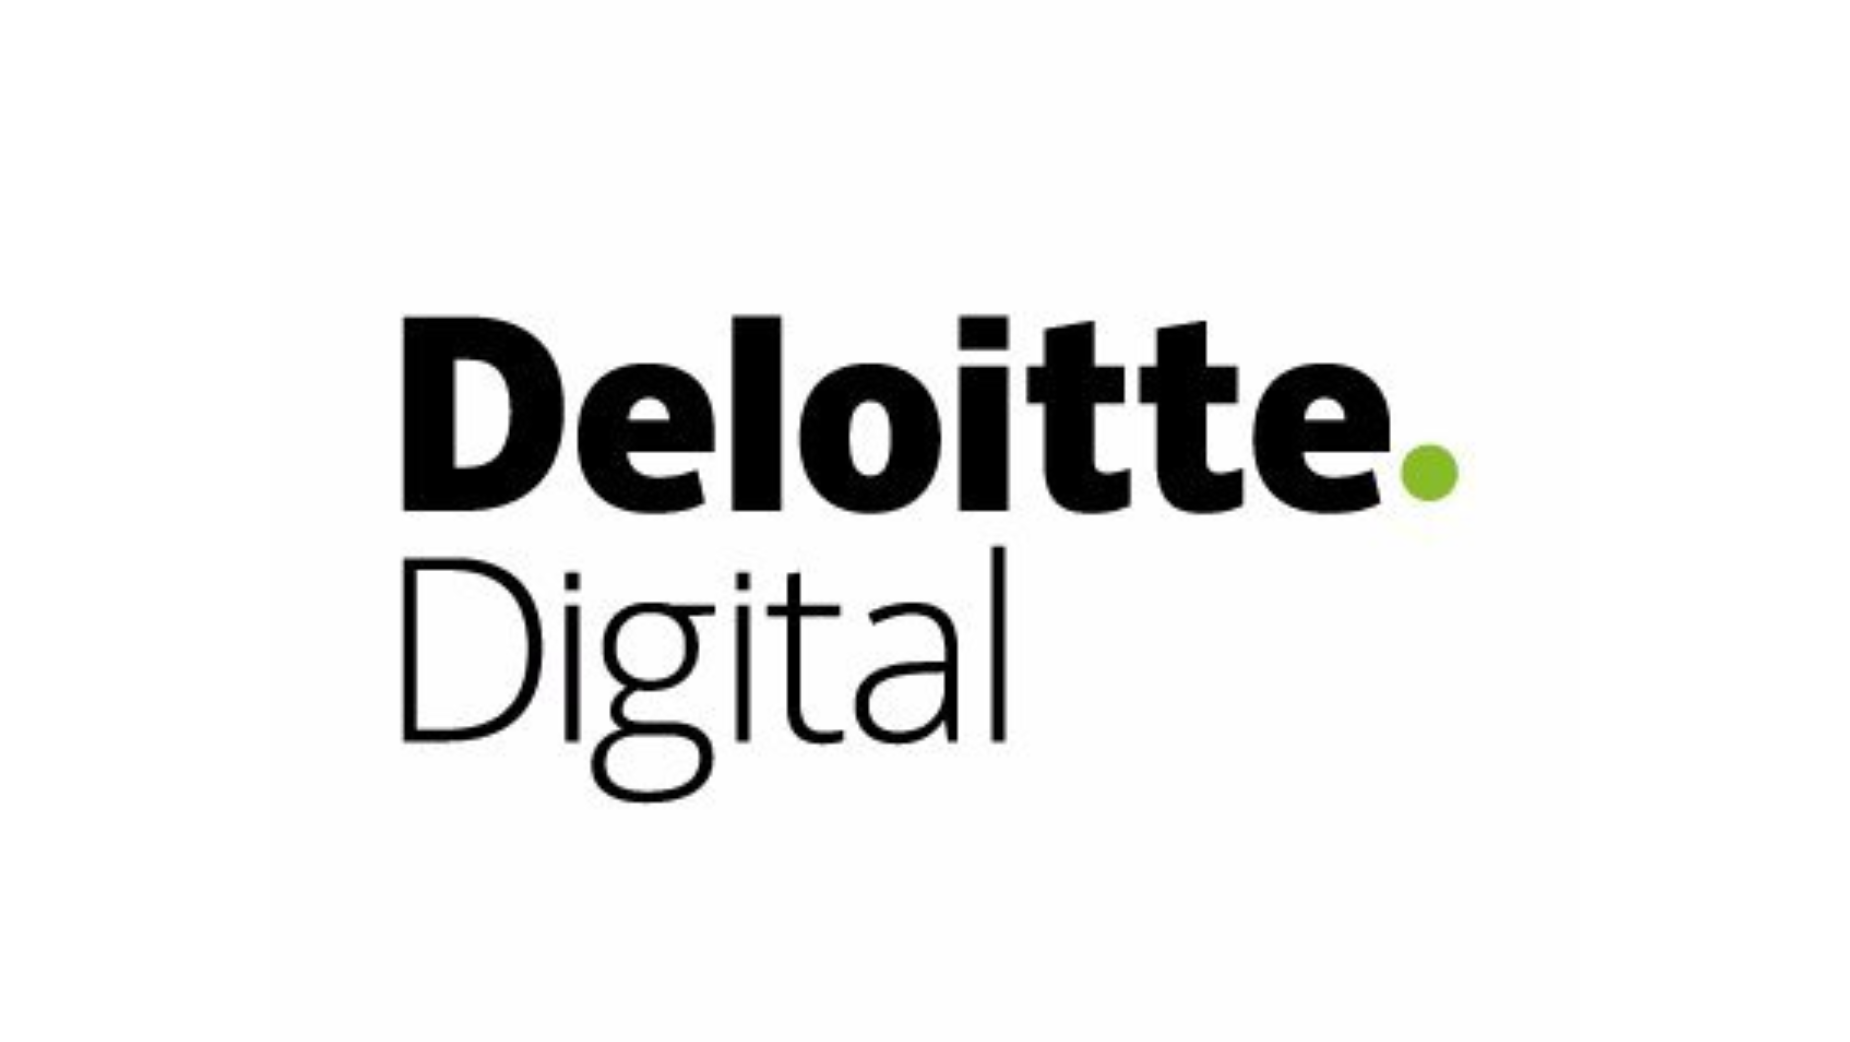 Deloitte Digital présente un outil de contenu créatif basé sur l’IA pour révolutionner le marketing